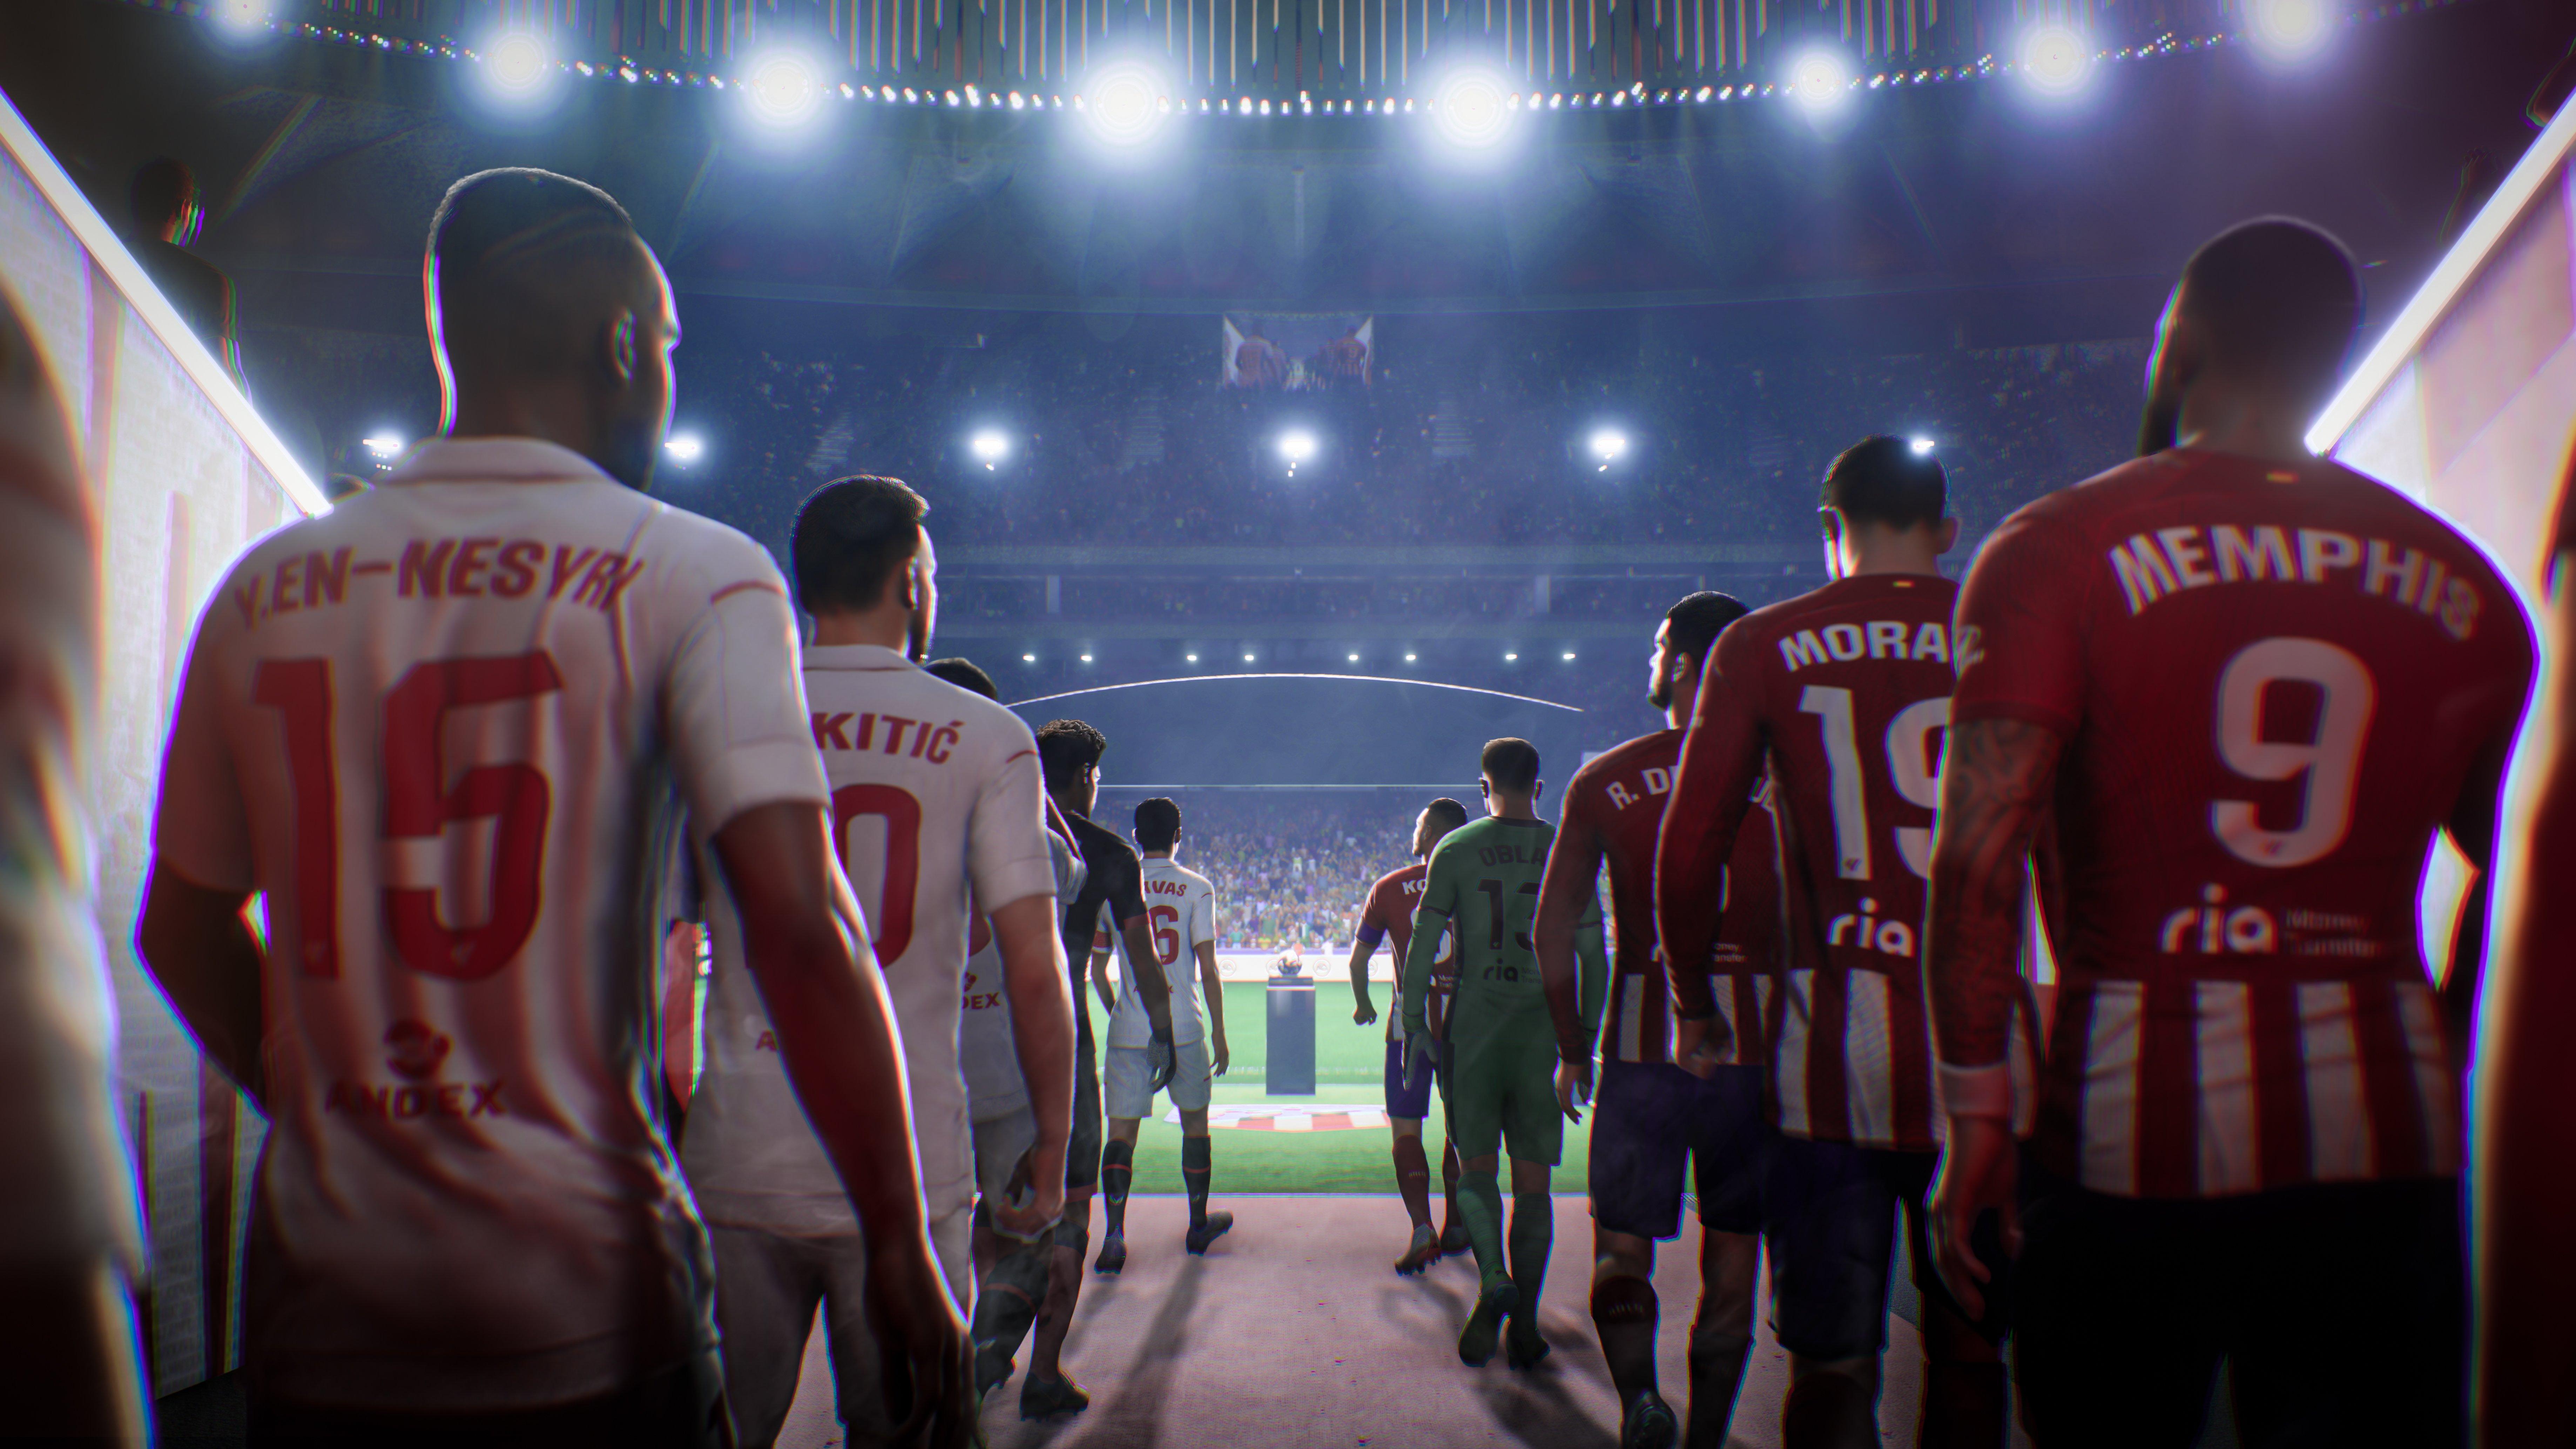 Jeu vidéo EA SPORTS FC 24 pour (PS4) 